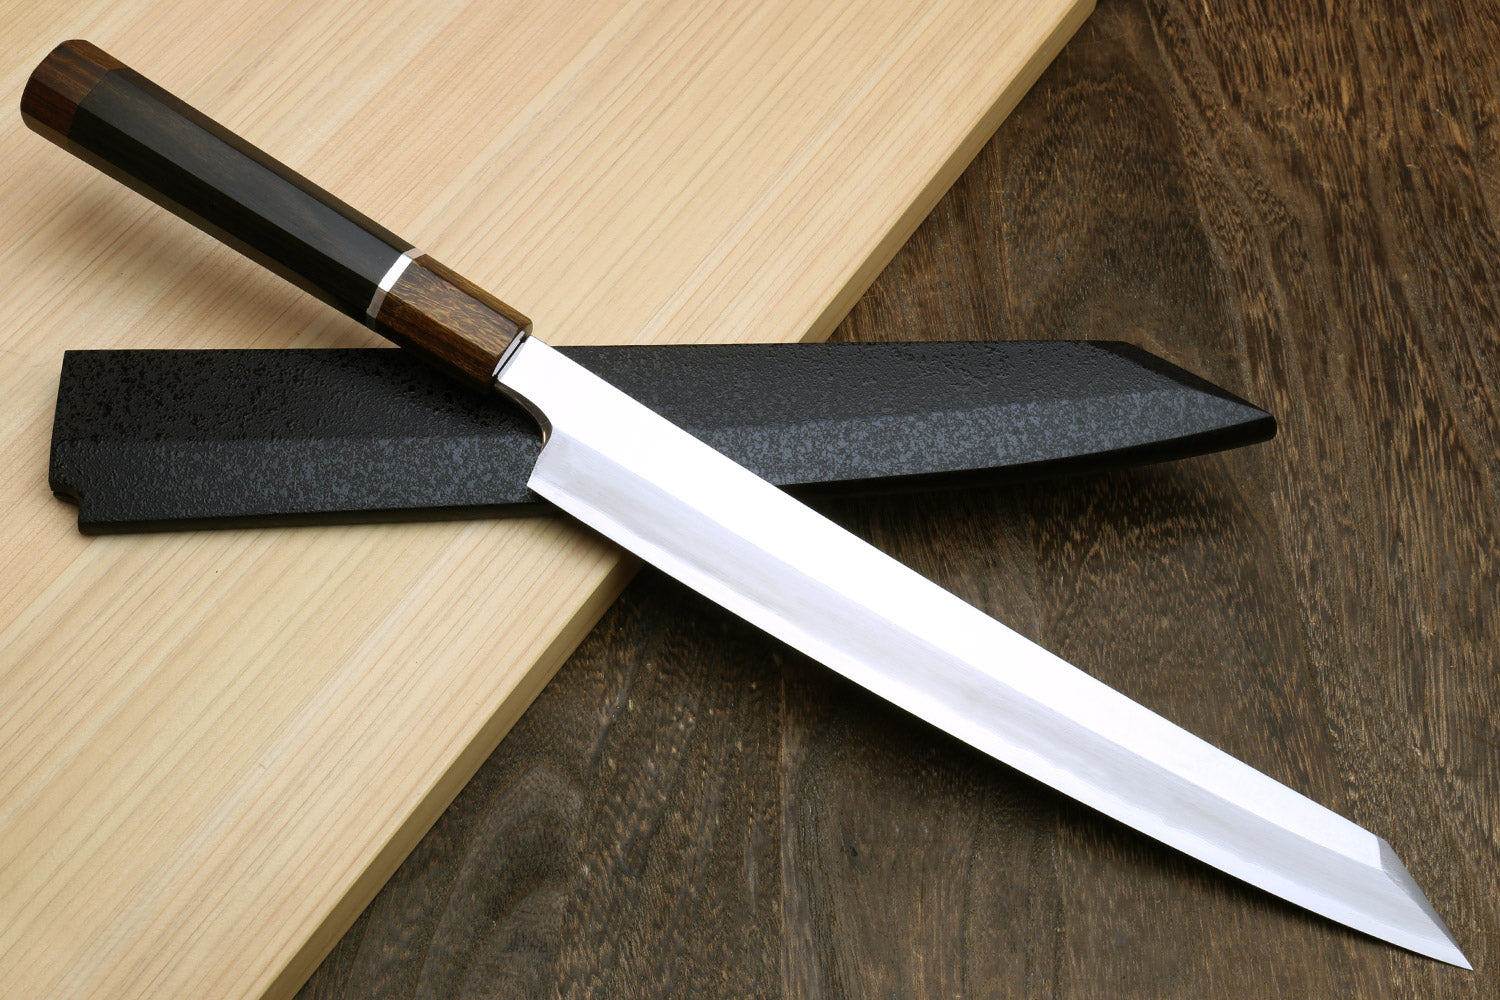 Professional Japanese Sashimi Sushi Knife Stainless Steel Sashimi